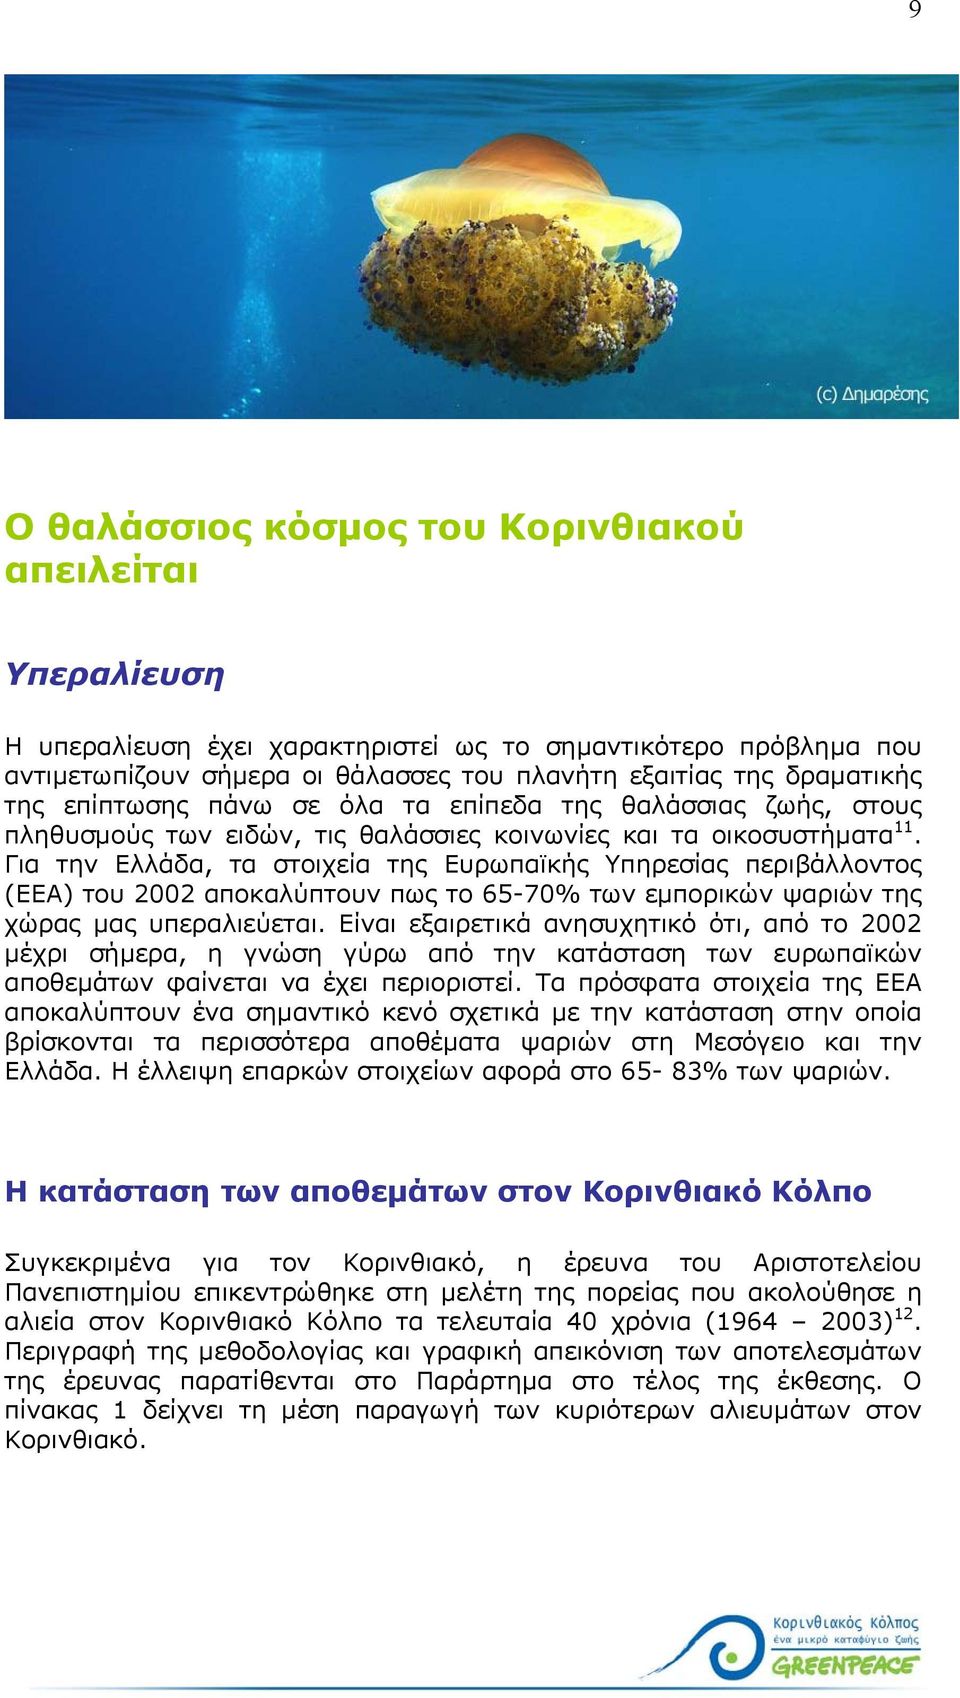 Για την Ελλάδα, τα στοιχεία της Ευρωπαϊκής Υπηρεσίας περιβάλλοντος (ΕΕΑ) του 2002 αποκαλύπτουν πως το 65-70% των εµπορικών ψαριών της χώρας µας υπεραλιεύεται.